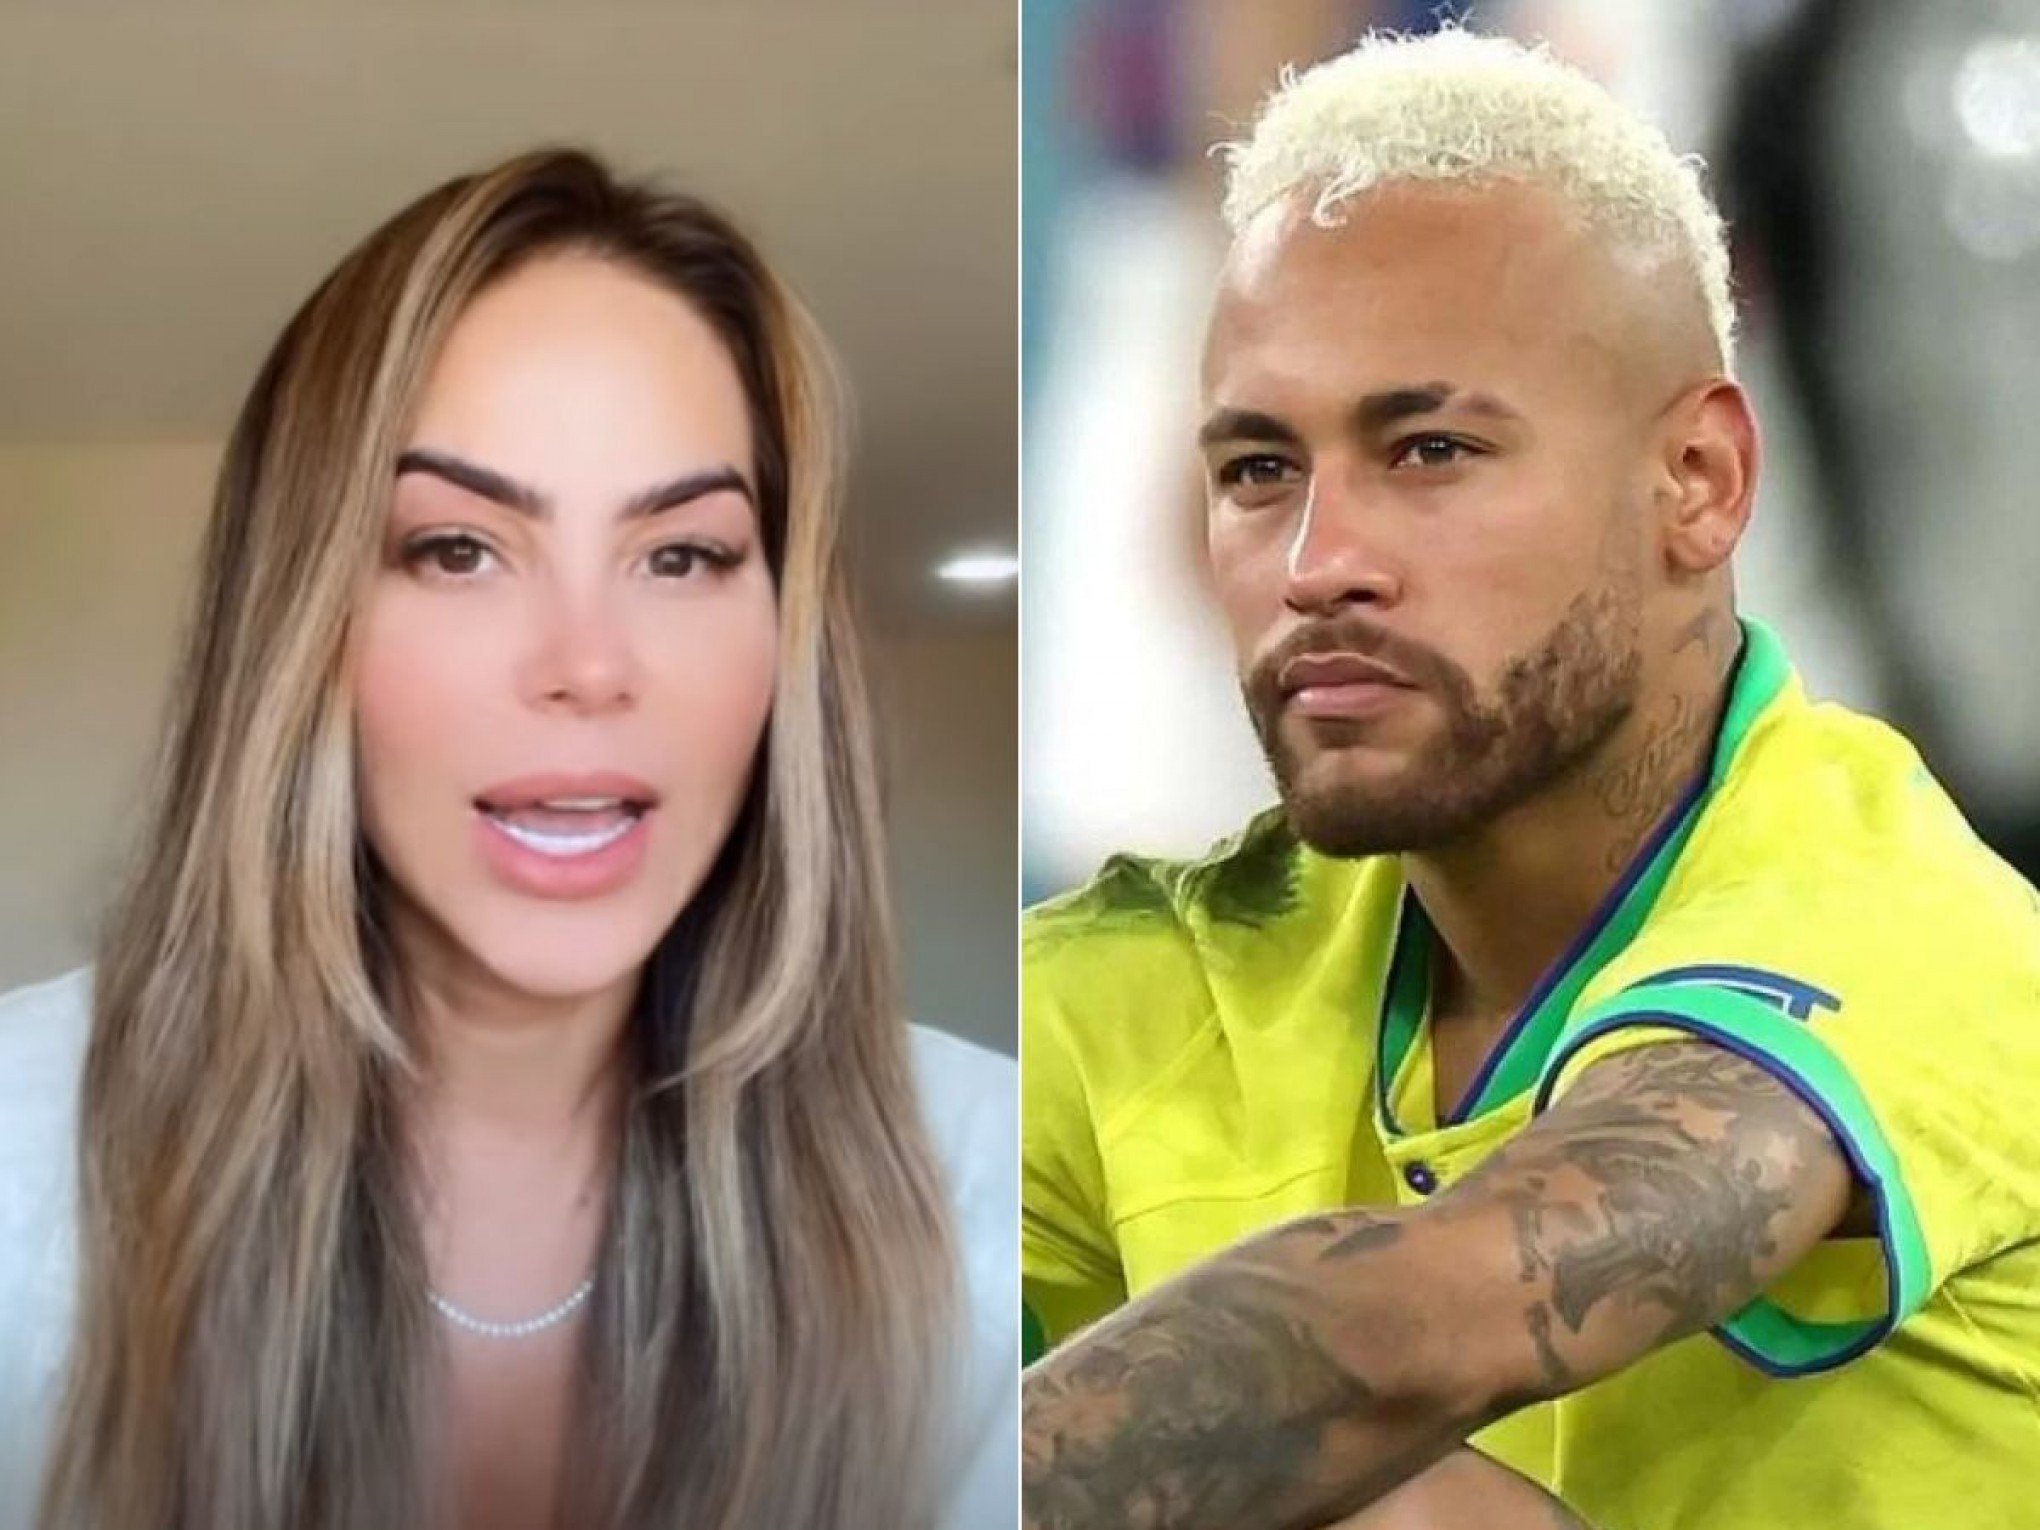 Influenciadora que expôs terceiro filho de Neymar diz que equipe fez comentário infeliz sobre cruzeiro: "Em tom de brincadeira"